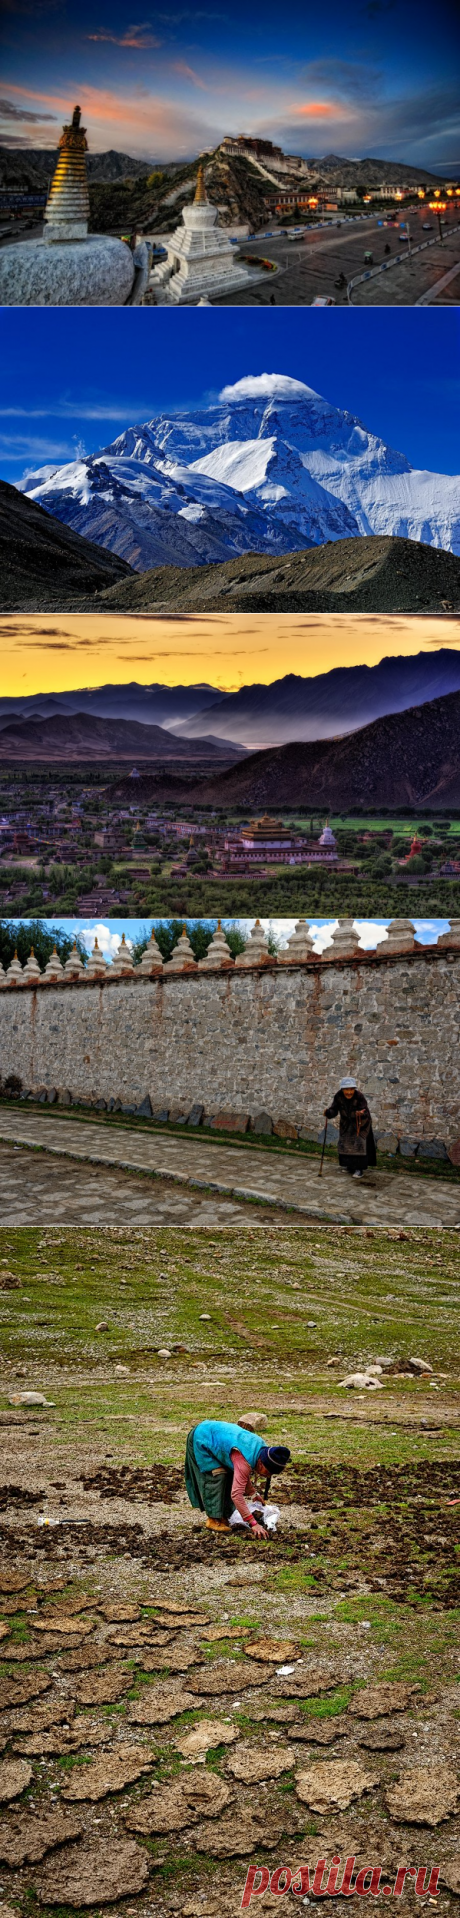 Незнакомый Тибет

Тибетское путешествие начинается задолго до пересечения Китайской границы, с признания факта силы и непоколебимой мощи бюрократической машины государства, построенного на принципах марксизма-ленинизма-маоизма и прочих измах. Практически невозможно, подчиняясь законам страны, путешествовать по Тибету самостоятельно. Вы обречены посотрудничать с туриндустрией Тибета, приносящей кстати до 60% дохода в бюджет региона.

(40 фото)